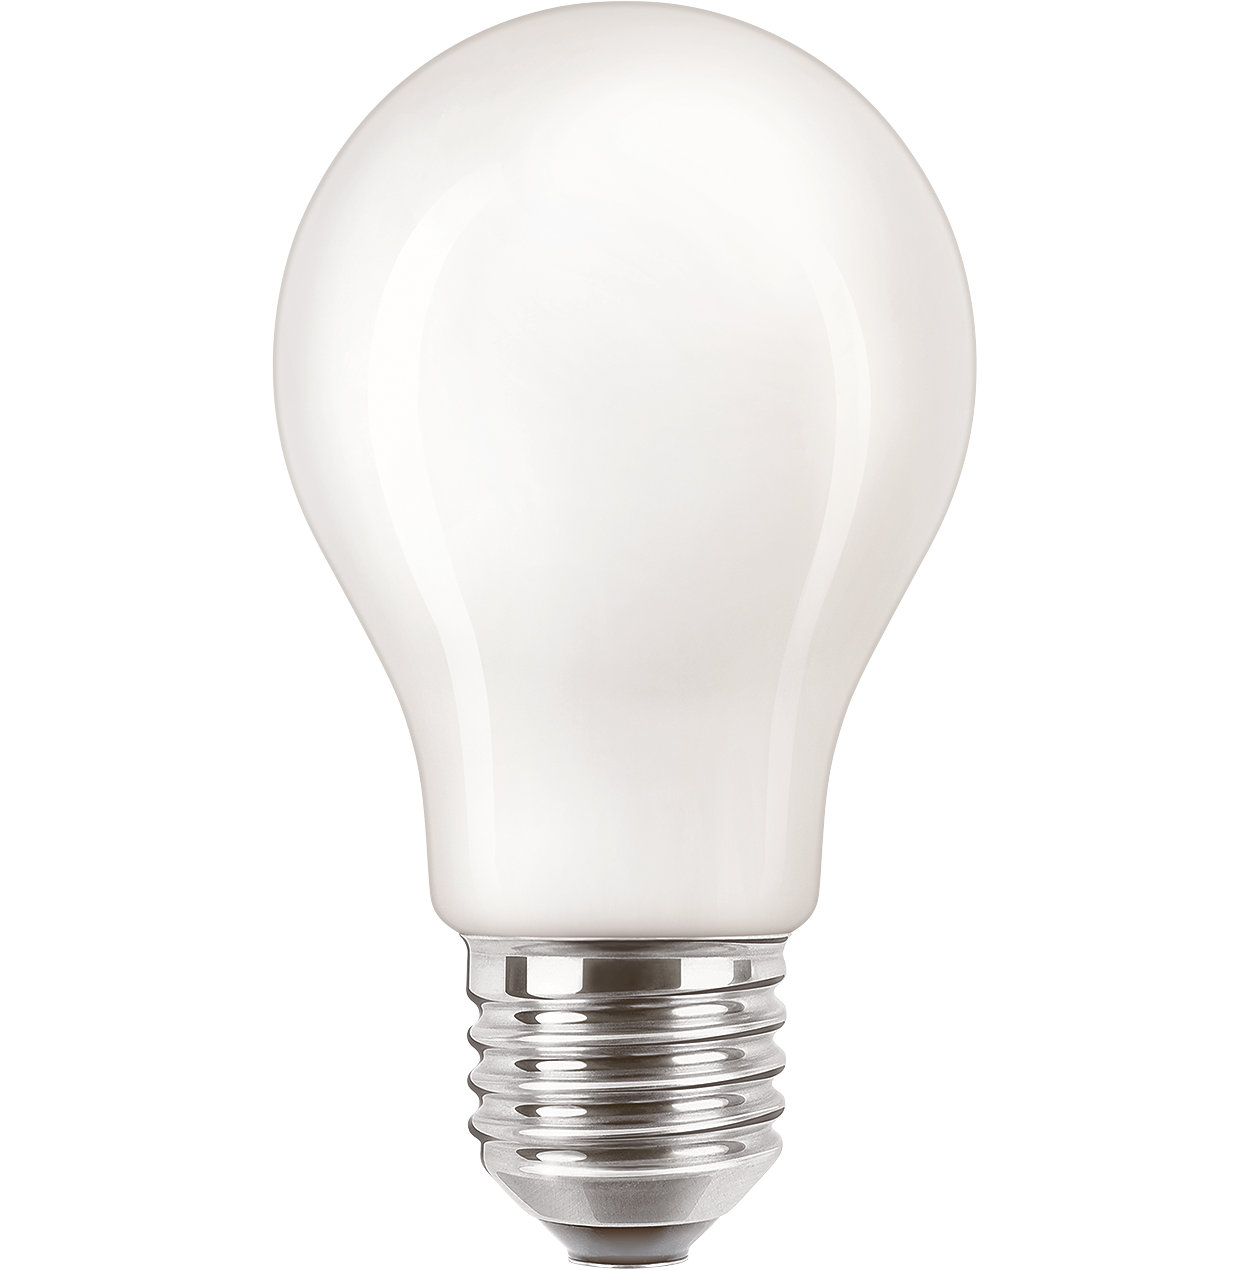 De CorePro LED-lamp combineert de klassieke vorm van gloeilampen met de voordelen van duurzame LED-technologie en is geschikt voor dagelijks gebruik